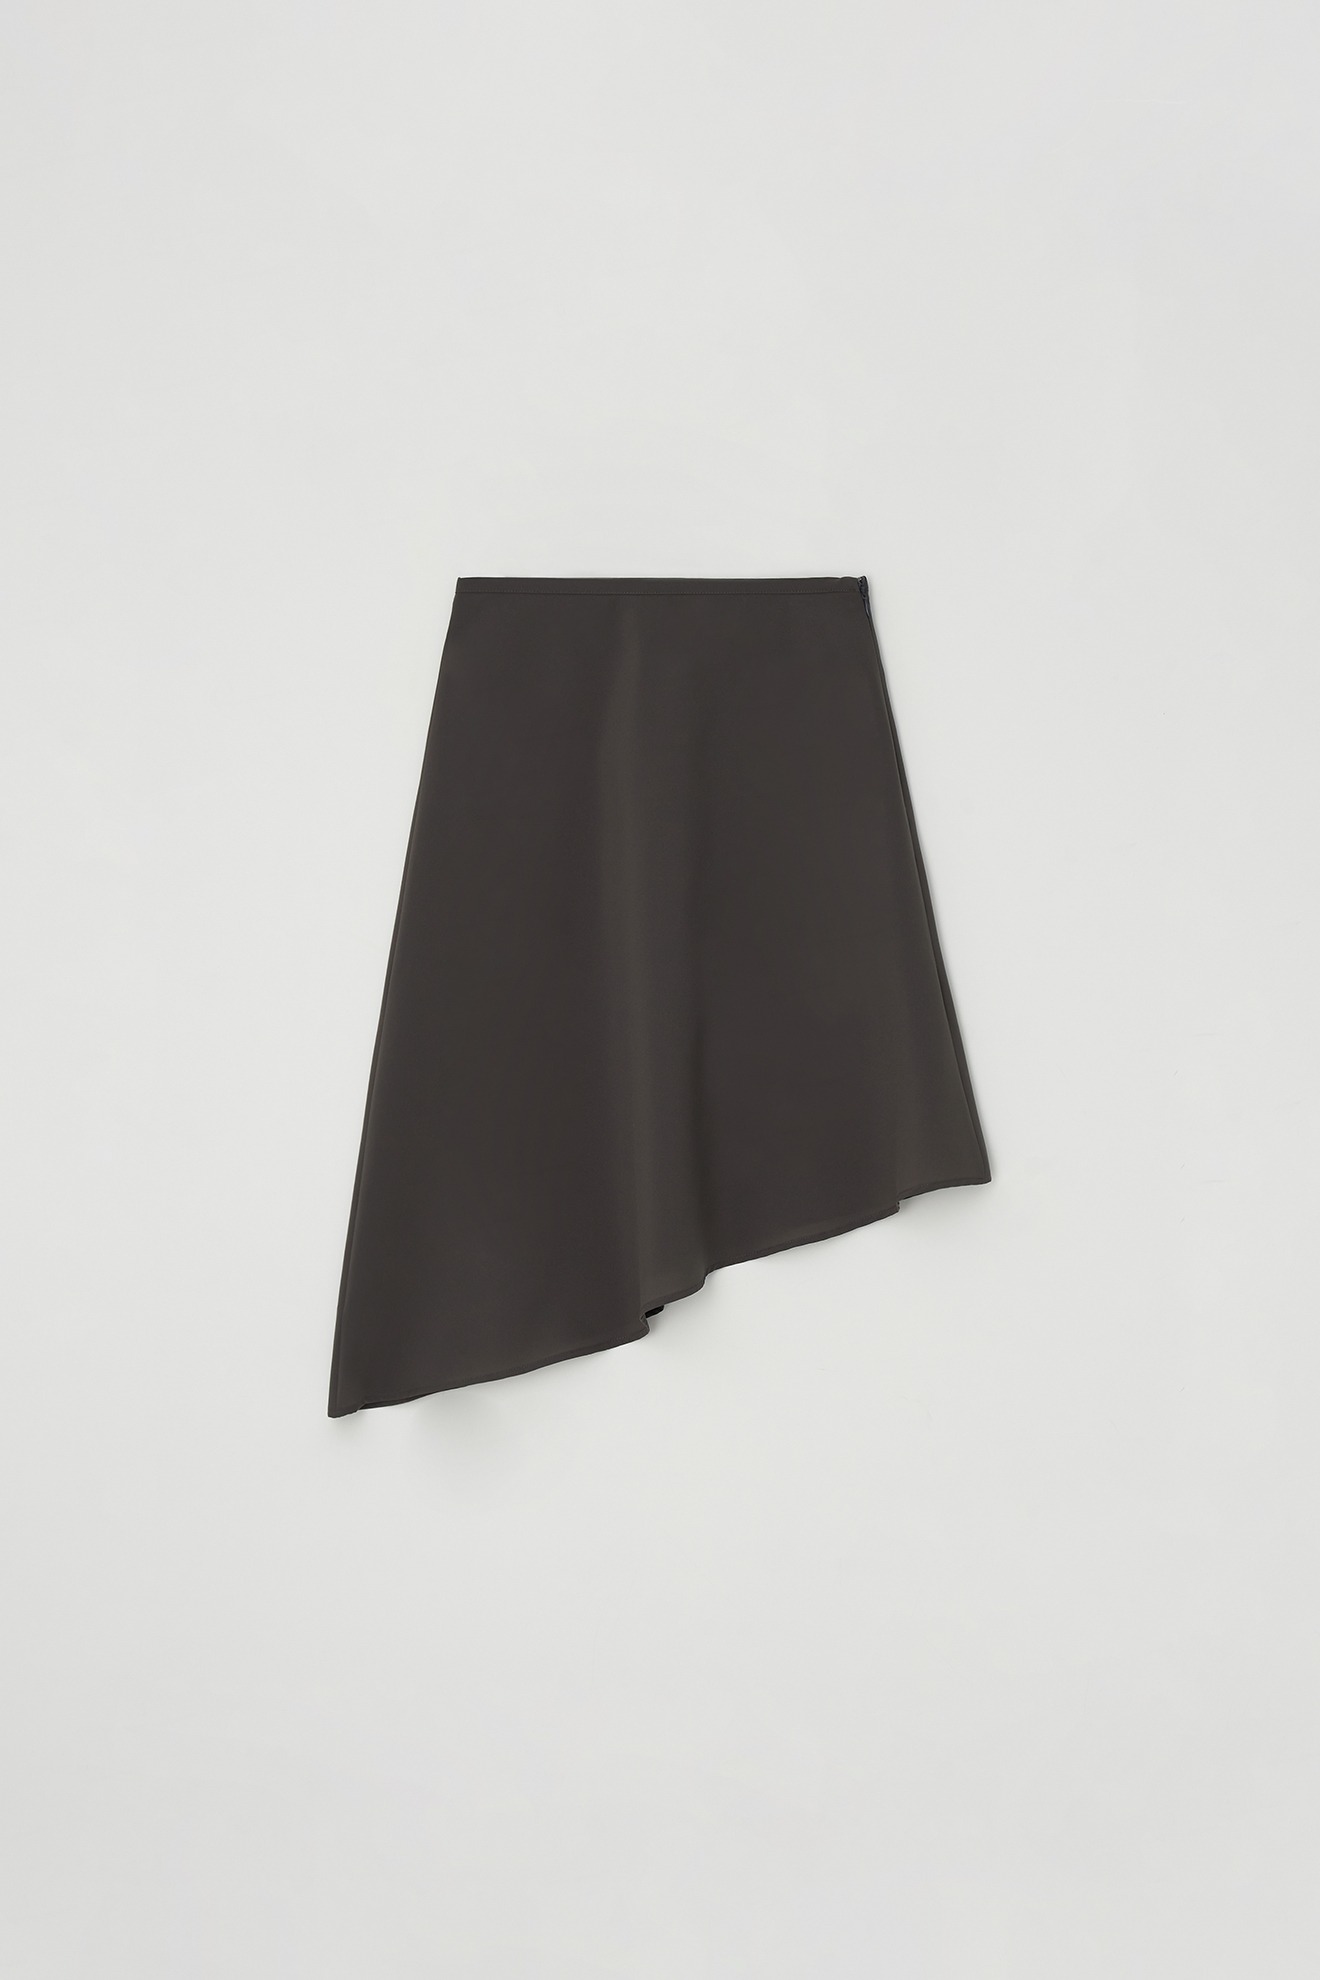 Unbalanced Skirt (charcoal)